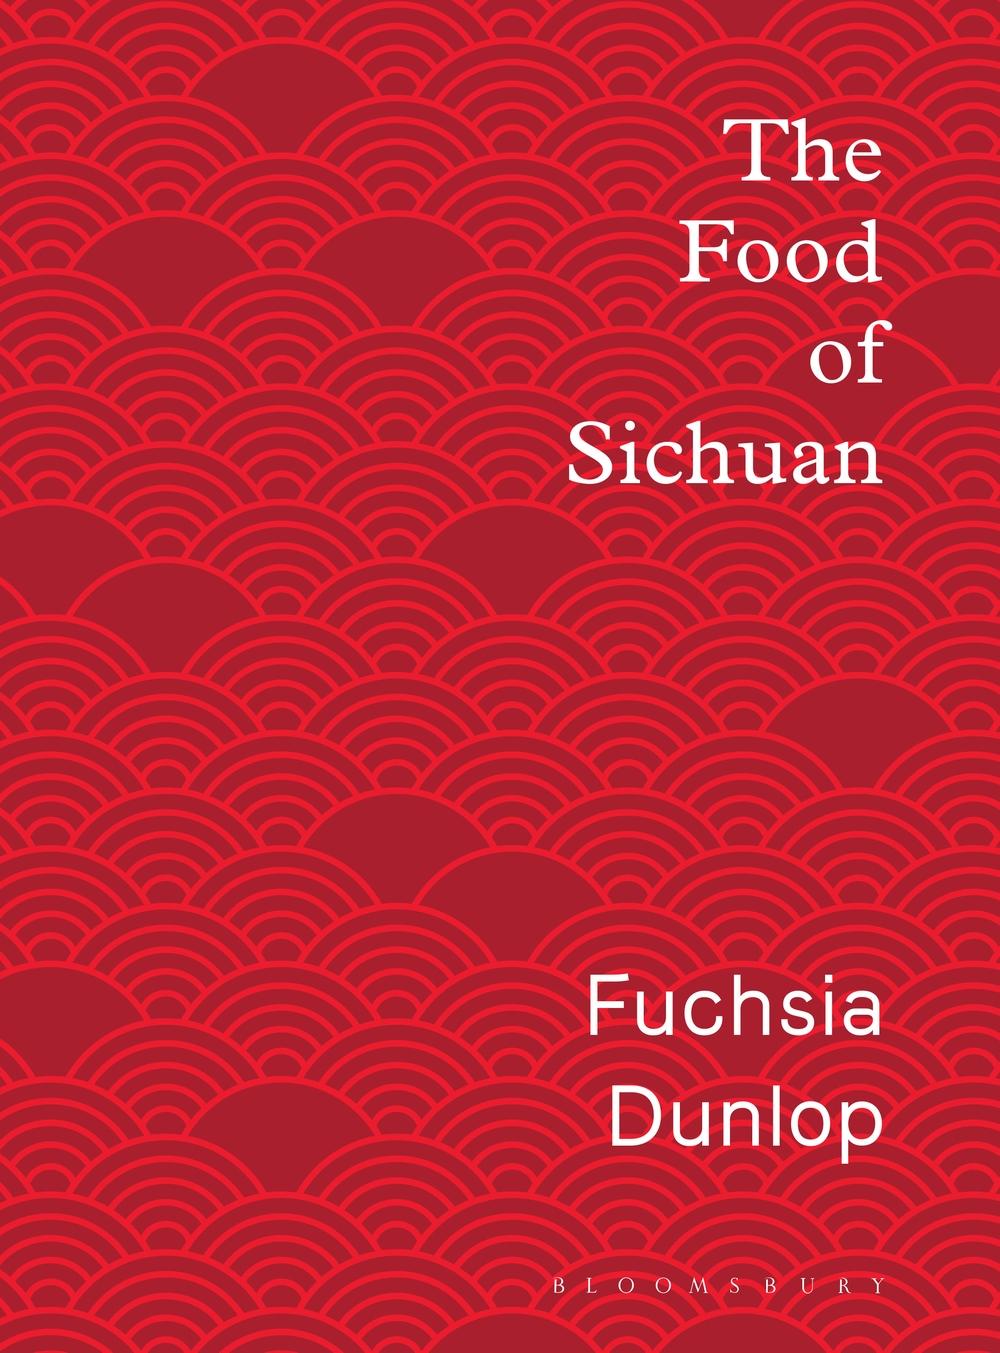 Food of Sichuan - Fuchsia Dunlop